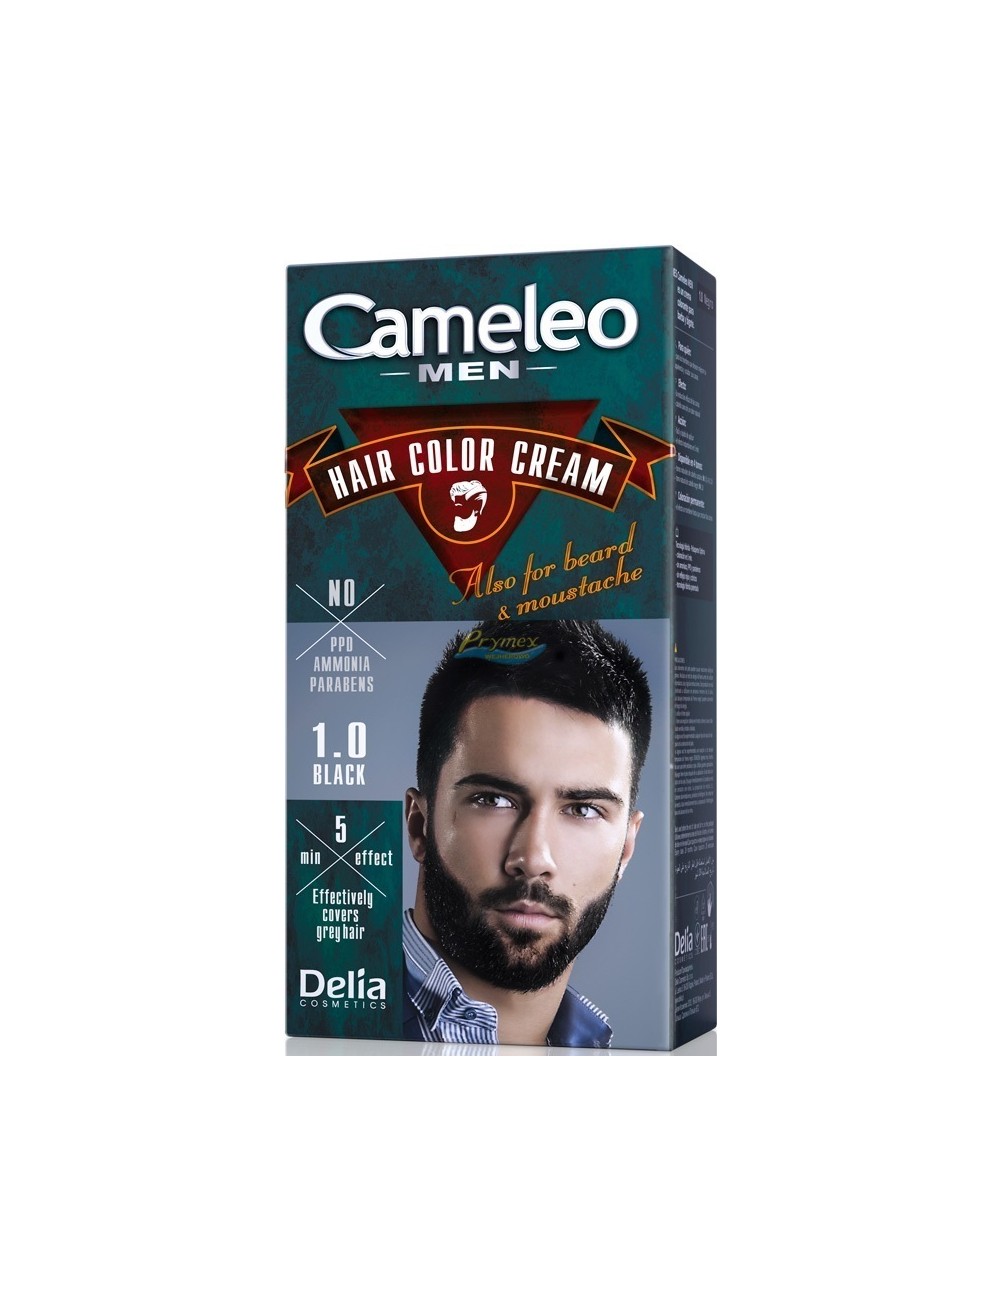 Cameleo Men Farba do Włosów i Brody dla Mężczyzn 1.0 Czarny Hair Color Cream 1 szt